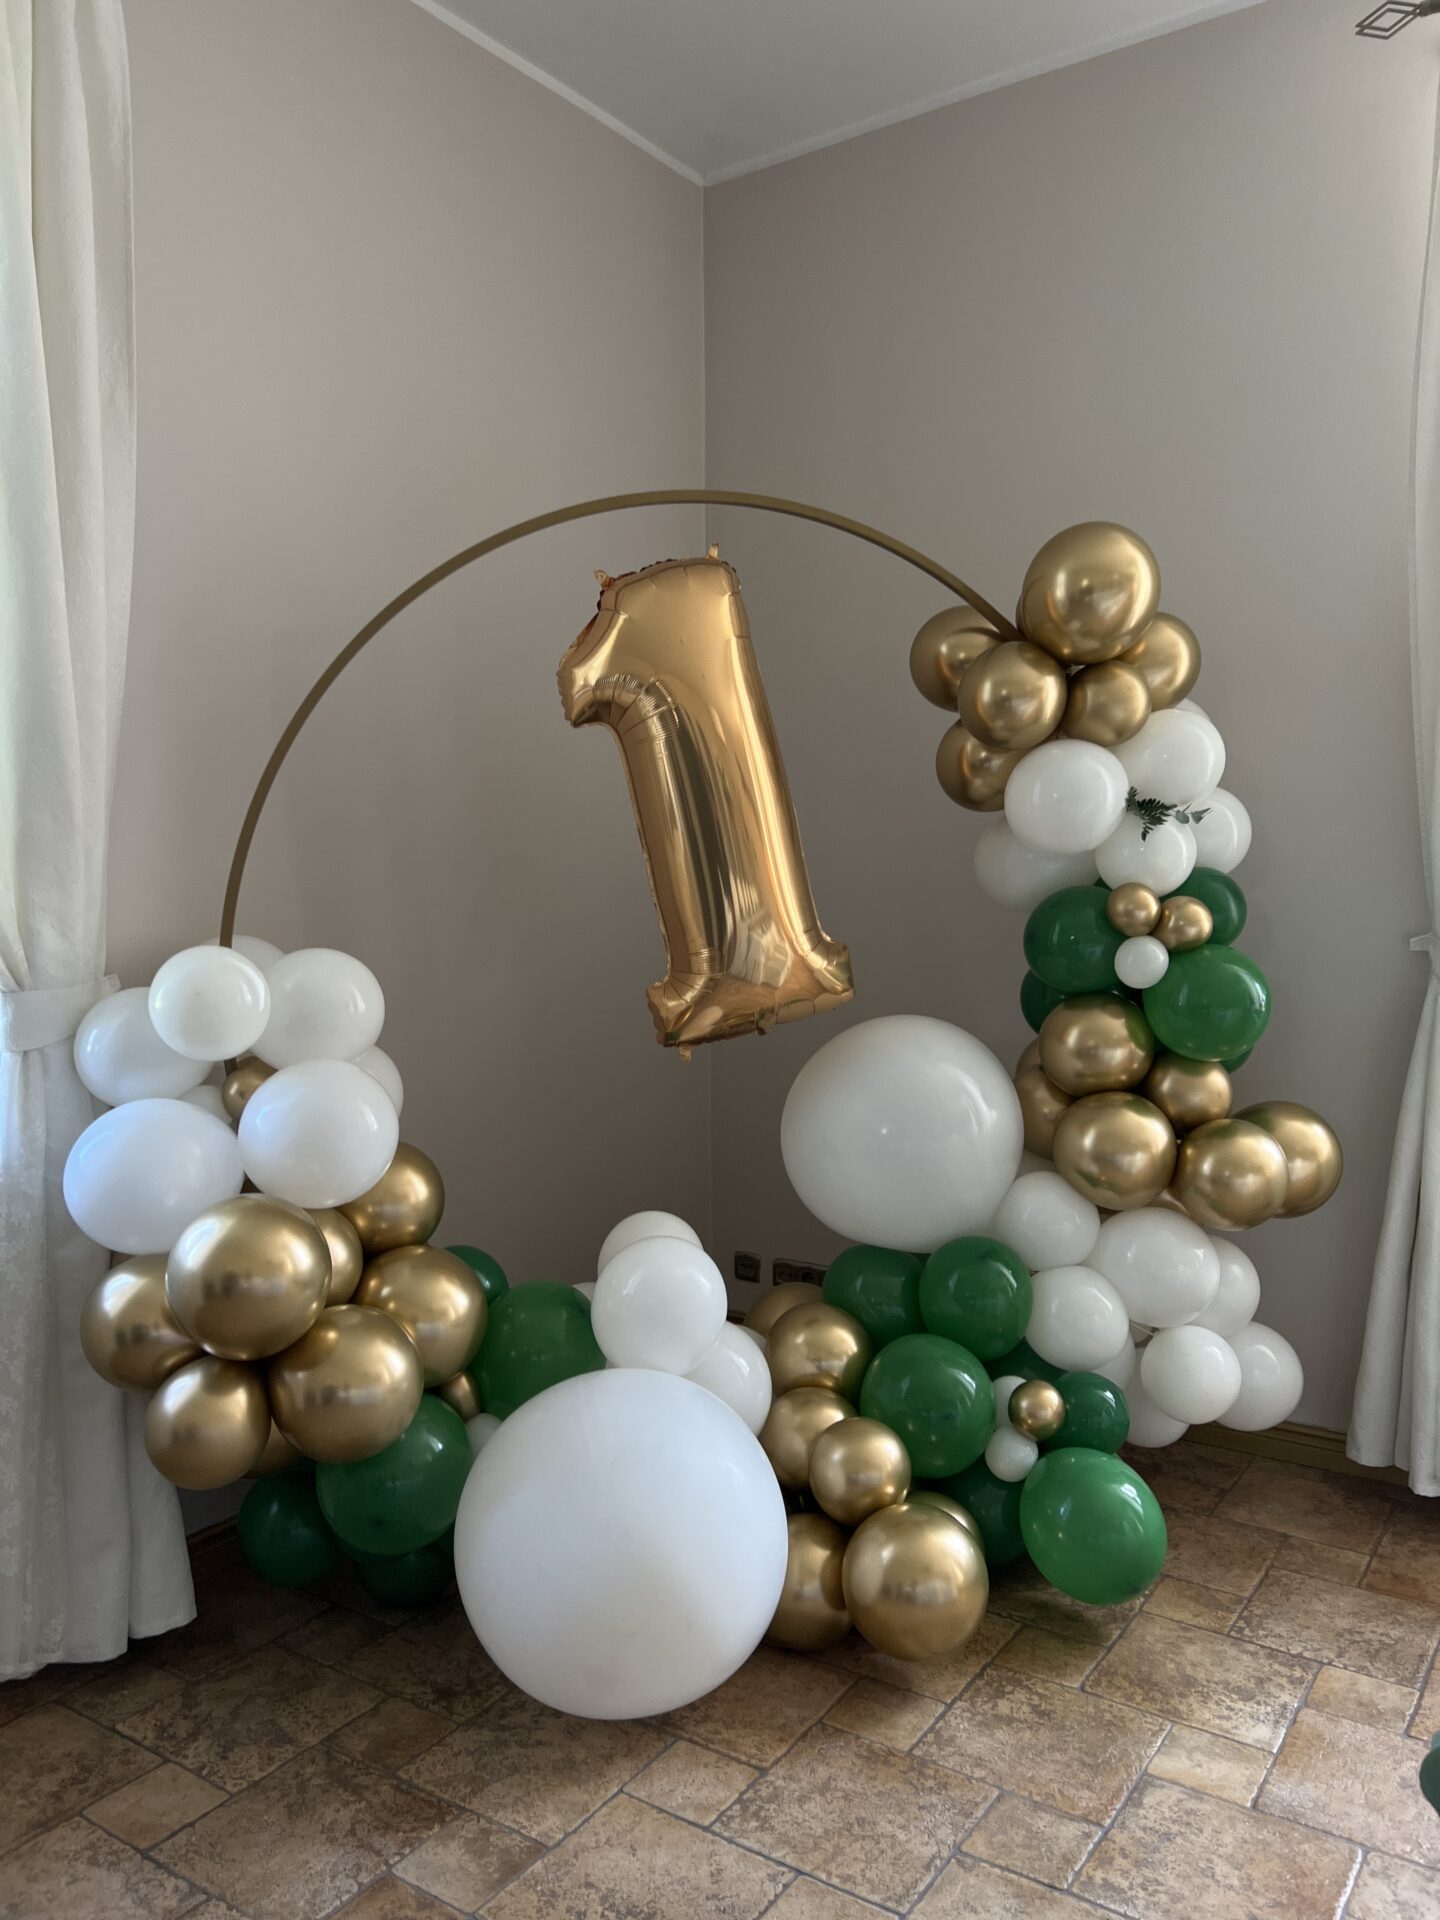 Scianka balonowa na roczek pierwsze urodziny scaled